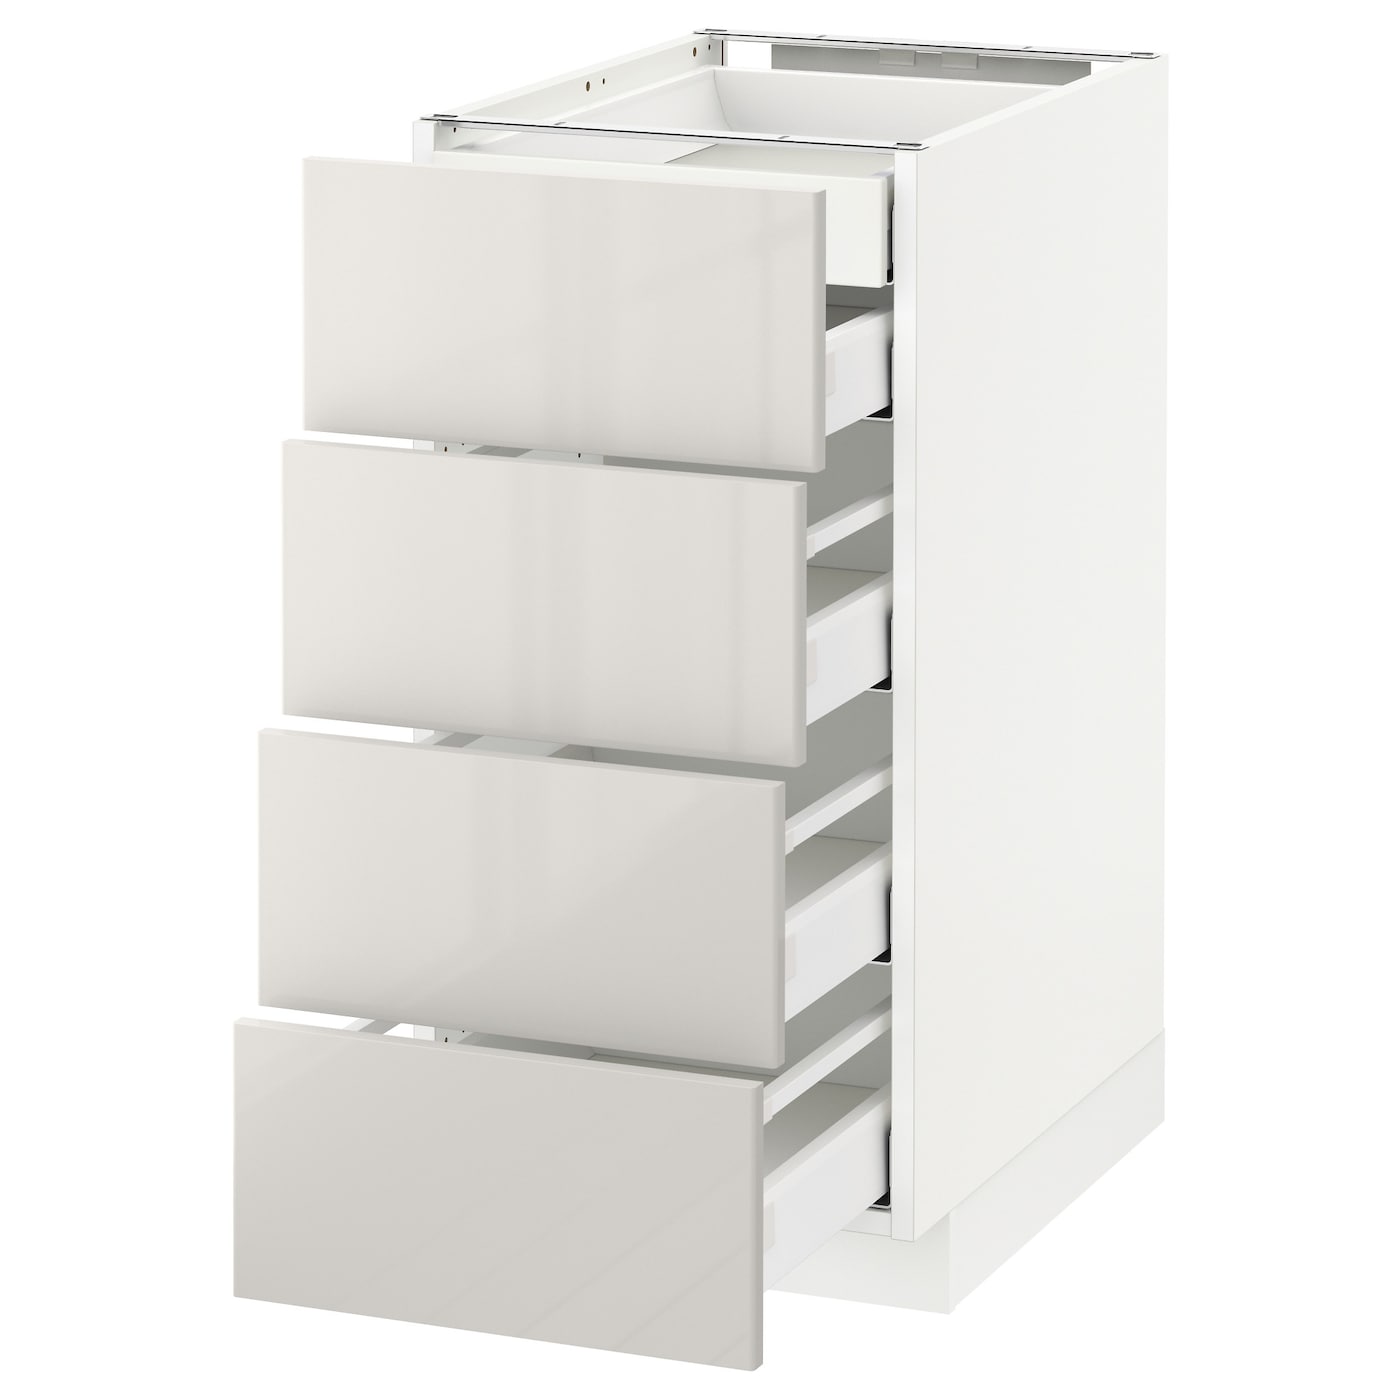 Напольный кухонный шкаф  - IKEA METOD MAXIMERA, 88x62x40см, белый/светло-серый, МЕТОД МАКСИМЕРА ИКЕА